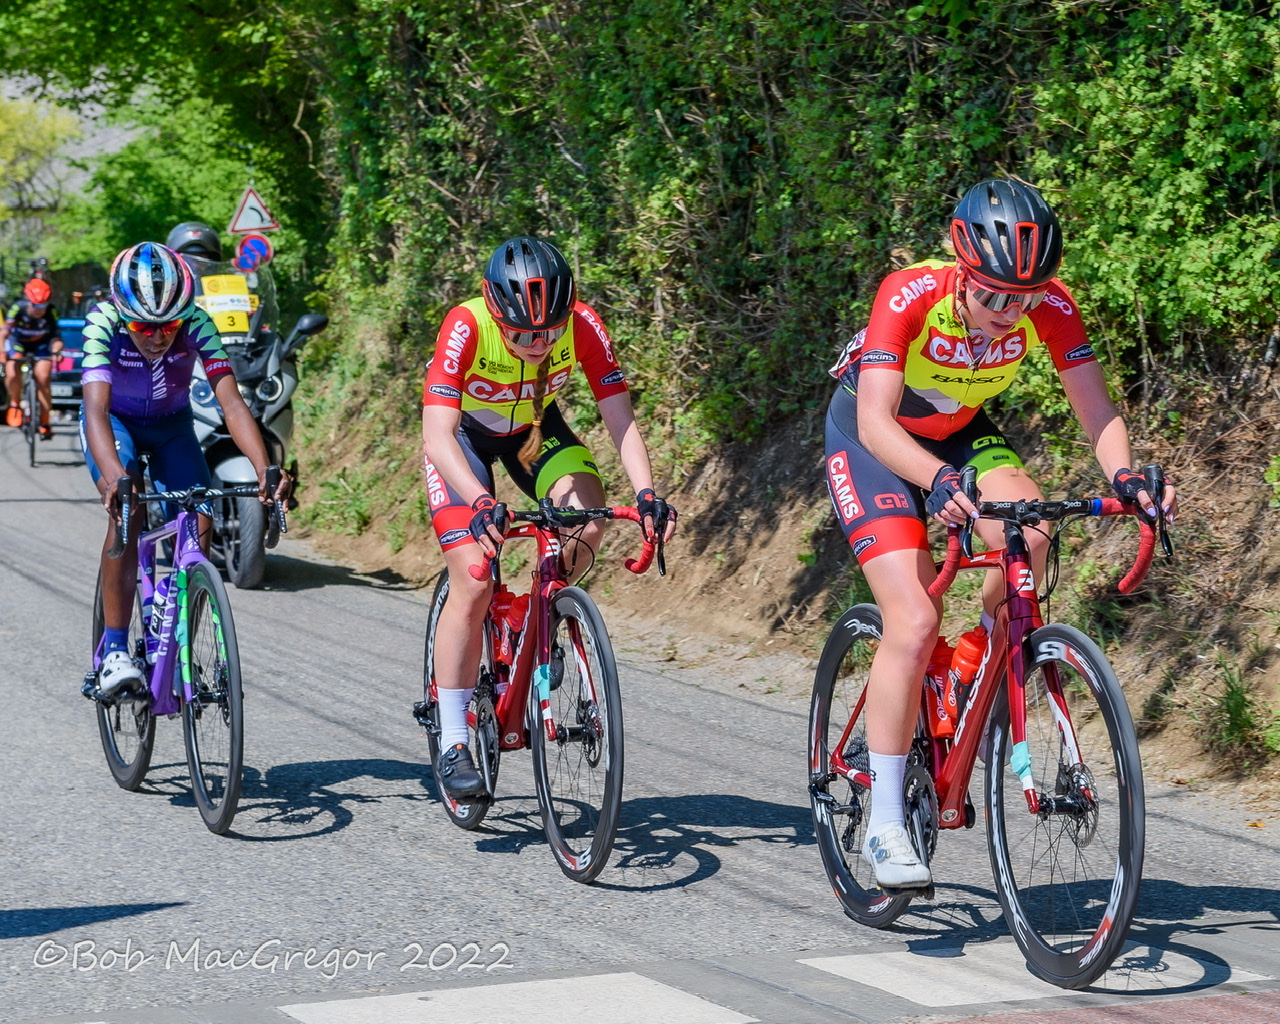 Katie Scott and Jess Finney racing Basso bikes at Grand Prix Feminin Chambery